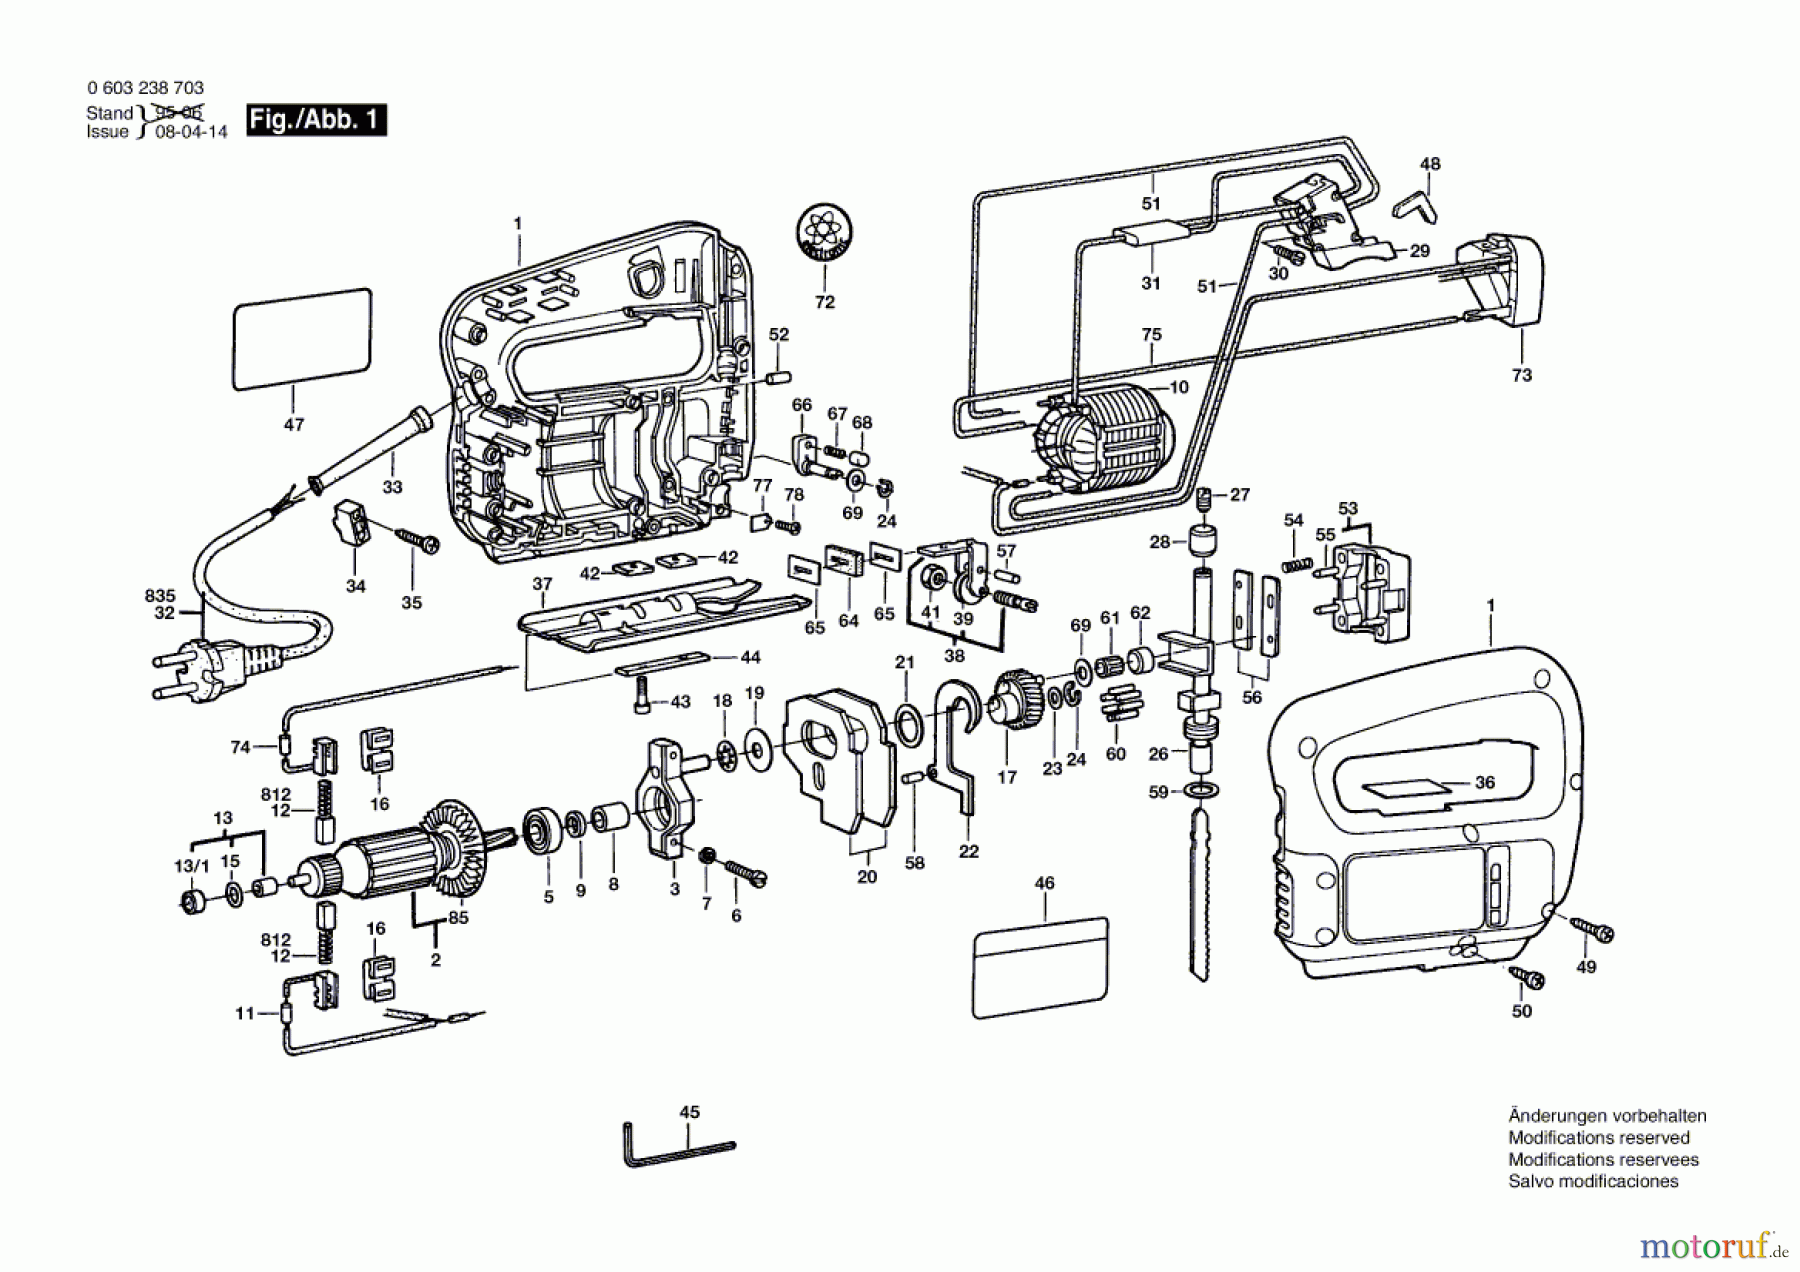  Bosch Werkzeug Stichsäge PST 55 PE Seite 1